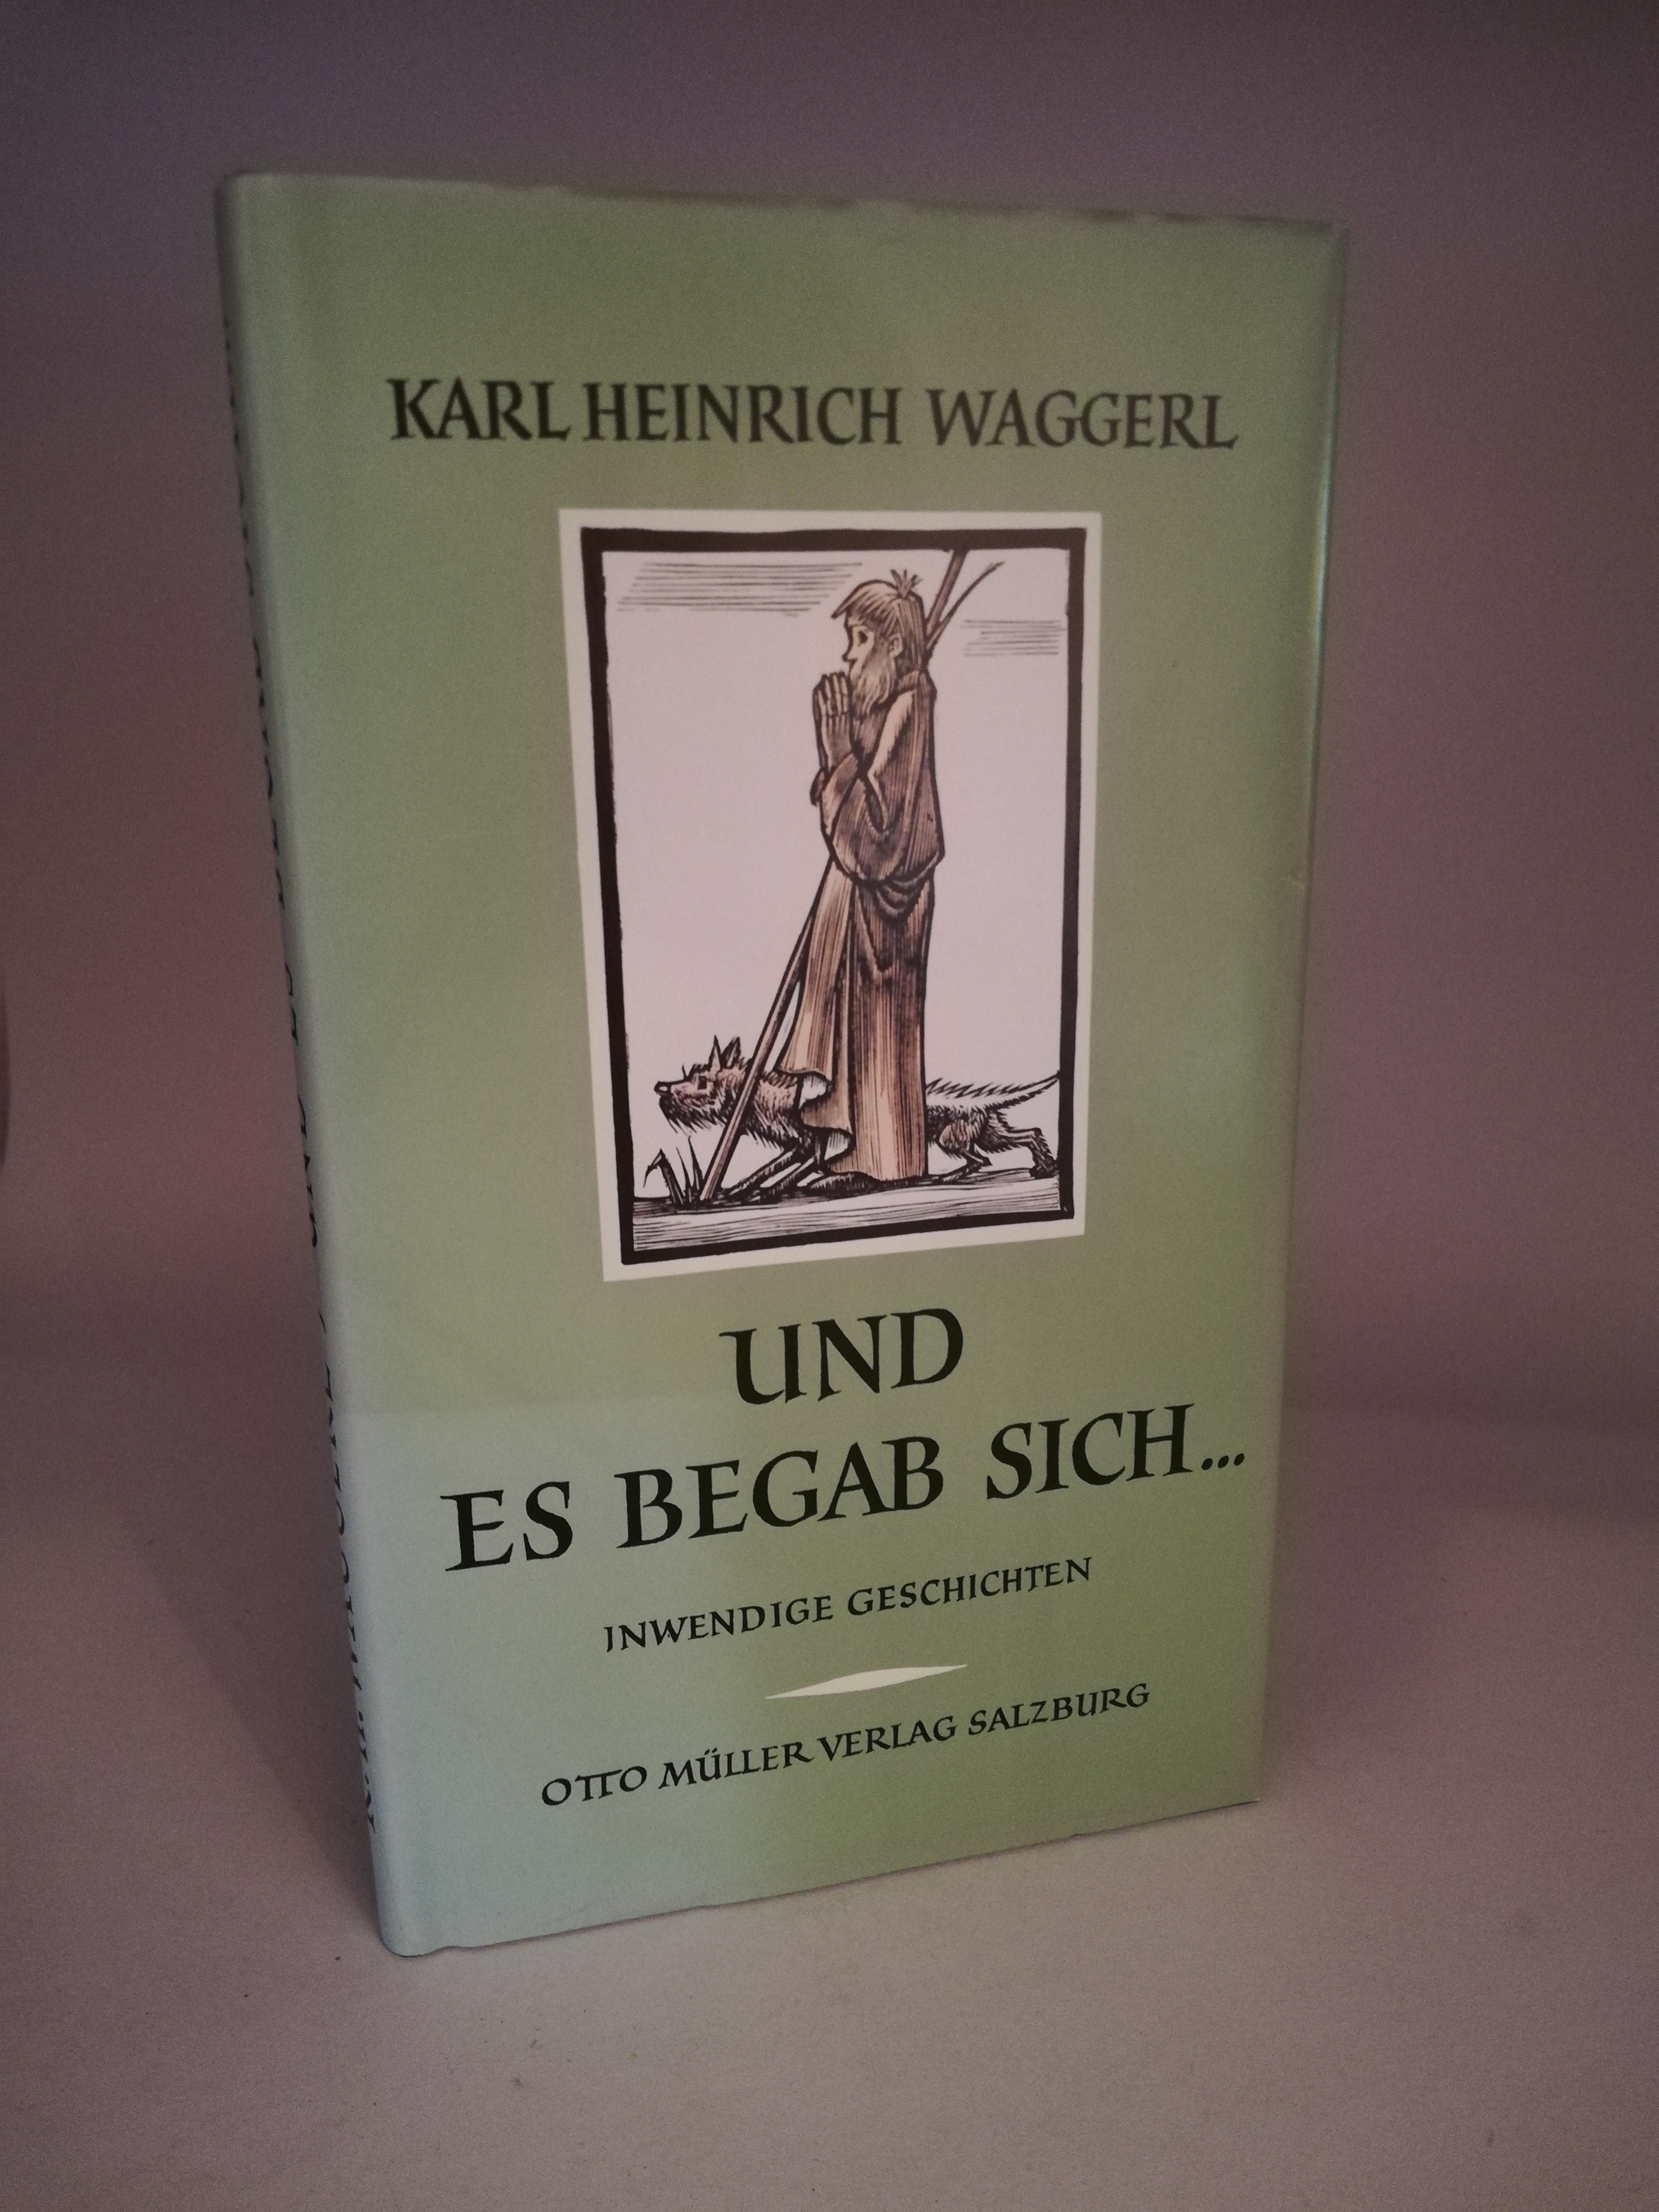 Karl Heinrich Waggerl  Und es Begab sich. Inwendige Geschichten 